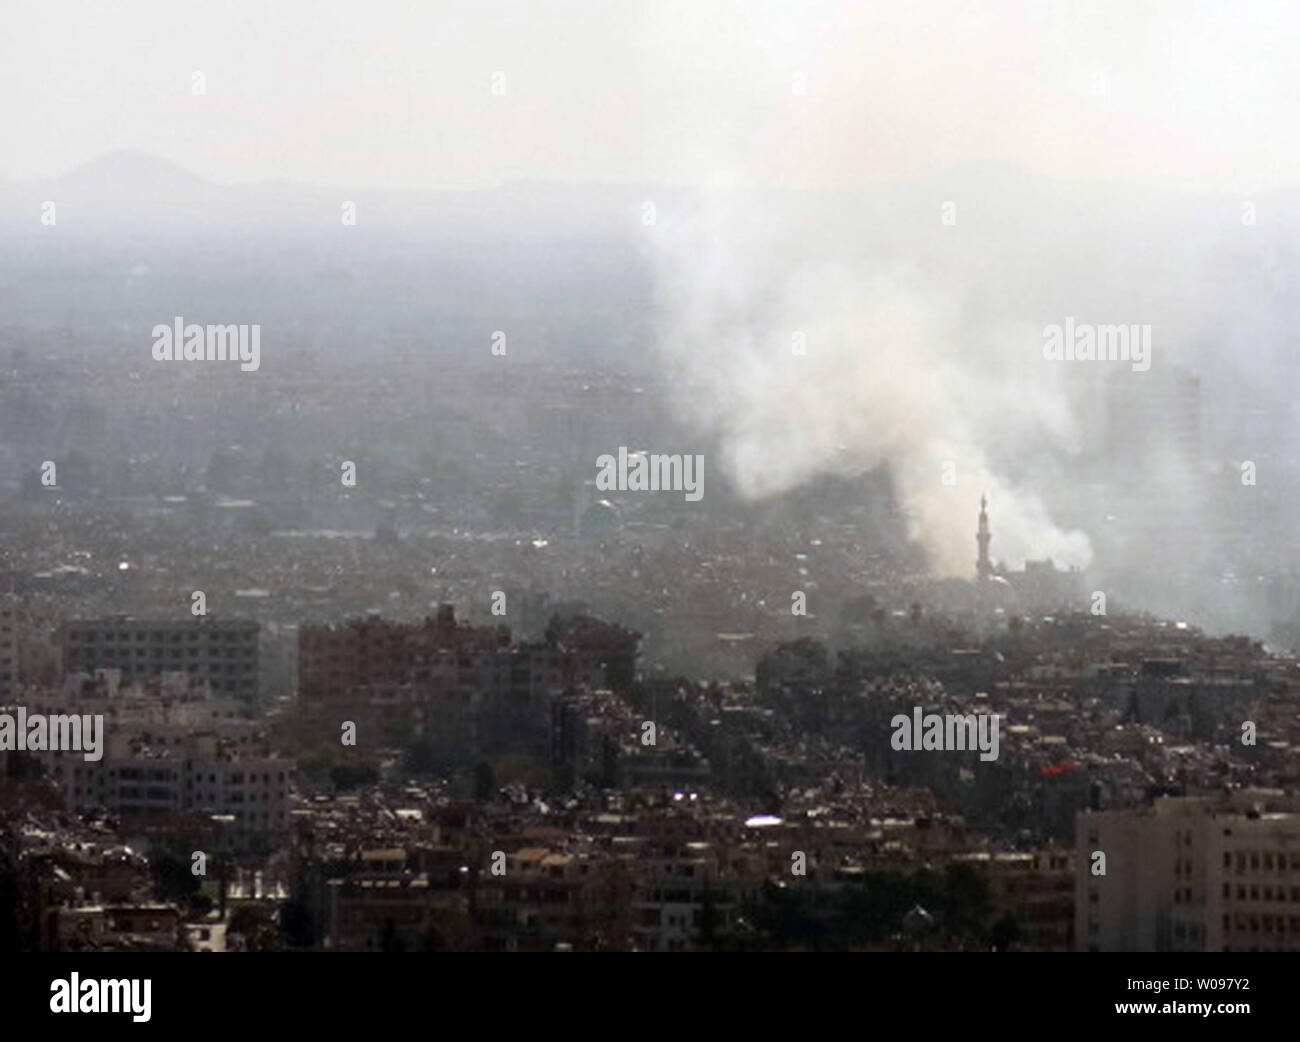 La fumée monte à partir de Damas après deux explosions ont frappé des complexes de sécurité dans la capitale syrienne Damas le 17 mars 2012. République des fonctionnaires du ministère de la santé a déclaré qu'au moins 27 personnes ont été tuées et 97 blessées dans les deux explosions qui a frappé la capitale syrienne Damas. Une explosion a eu lieu près de l'administration centrale du renseignement de l'air syrienne, la télévision syrienne a dit. UPI Banque D'Images